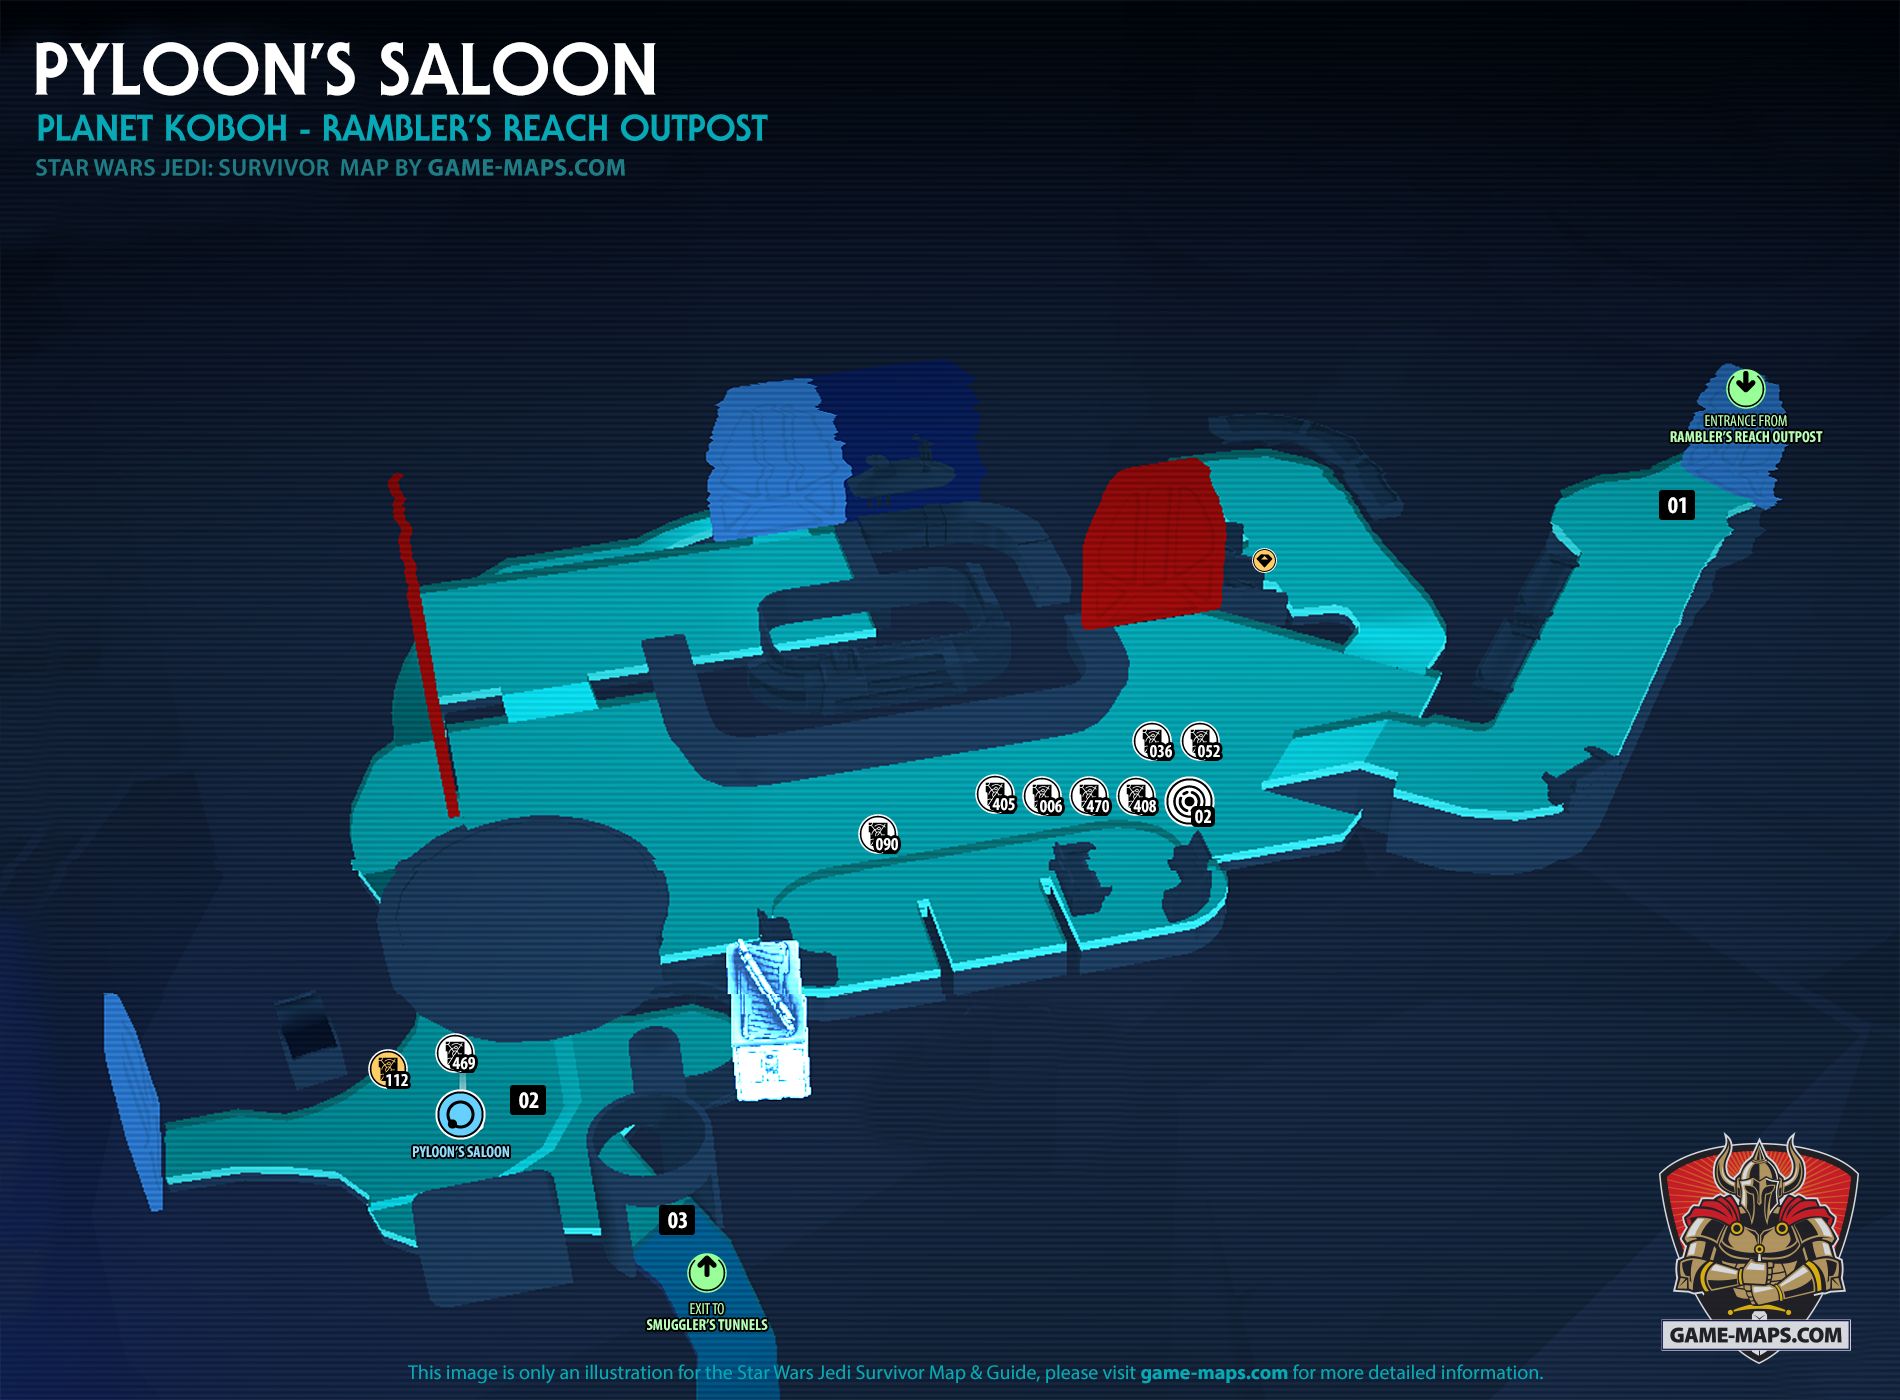 Pyloon’s Saloon Map Star Wars Jedi Survivor